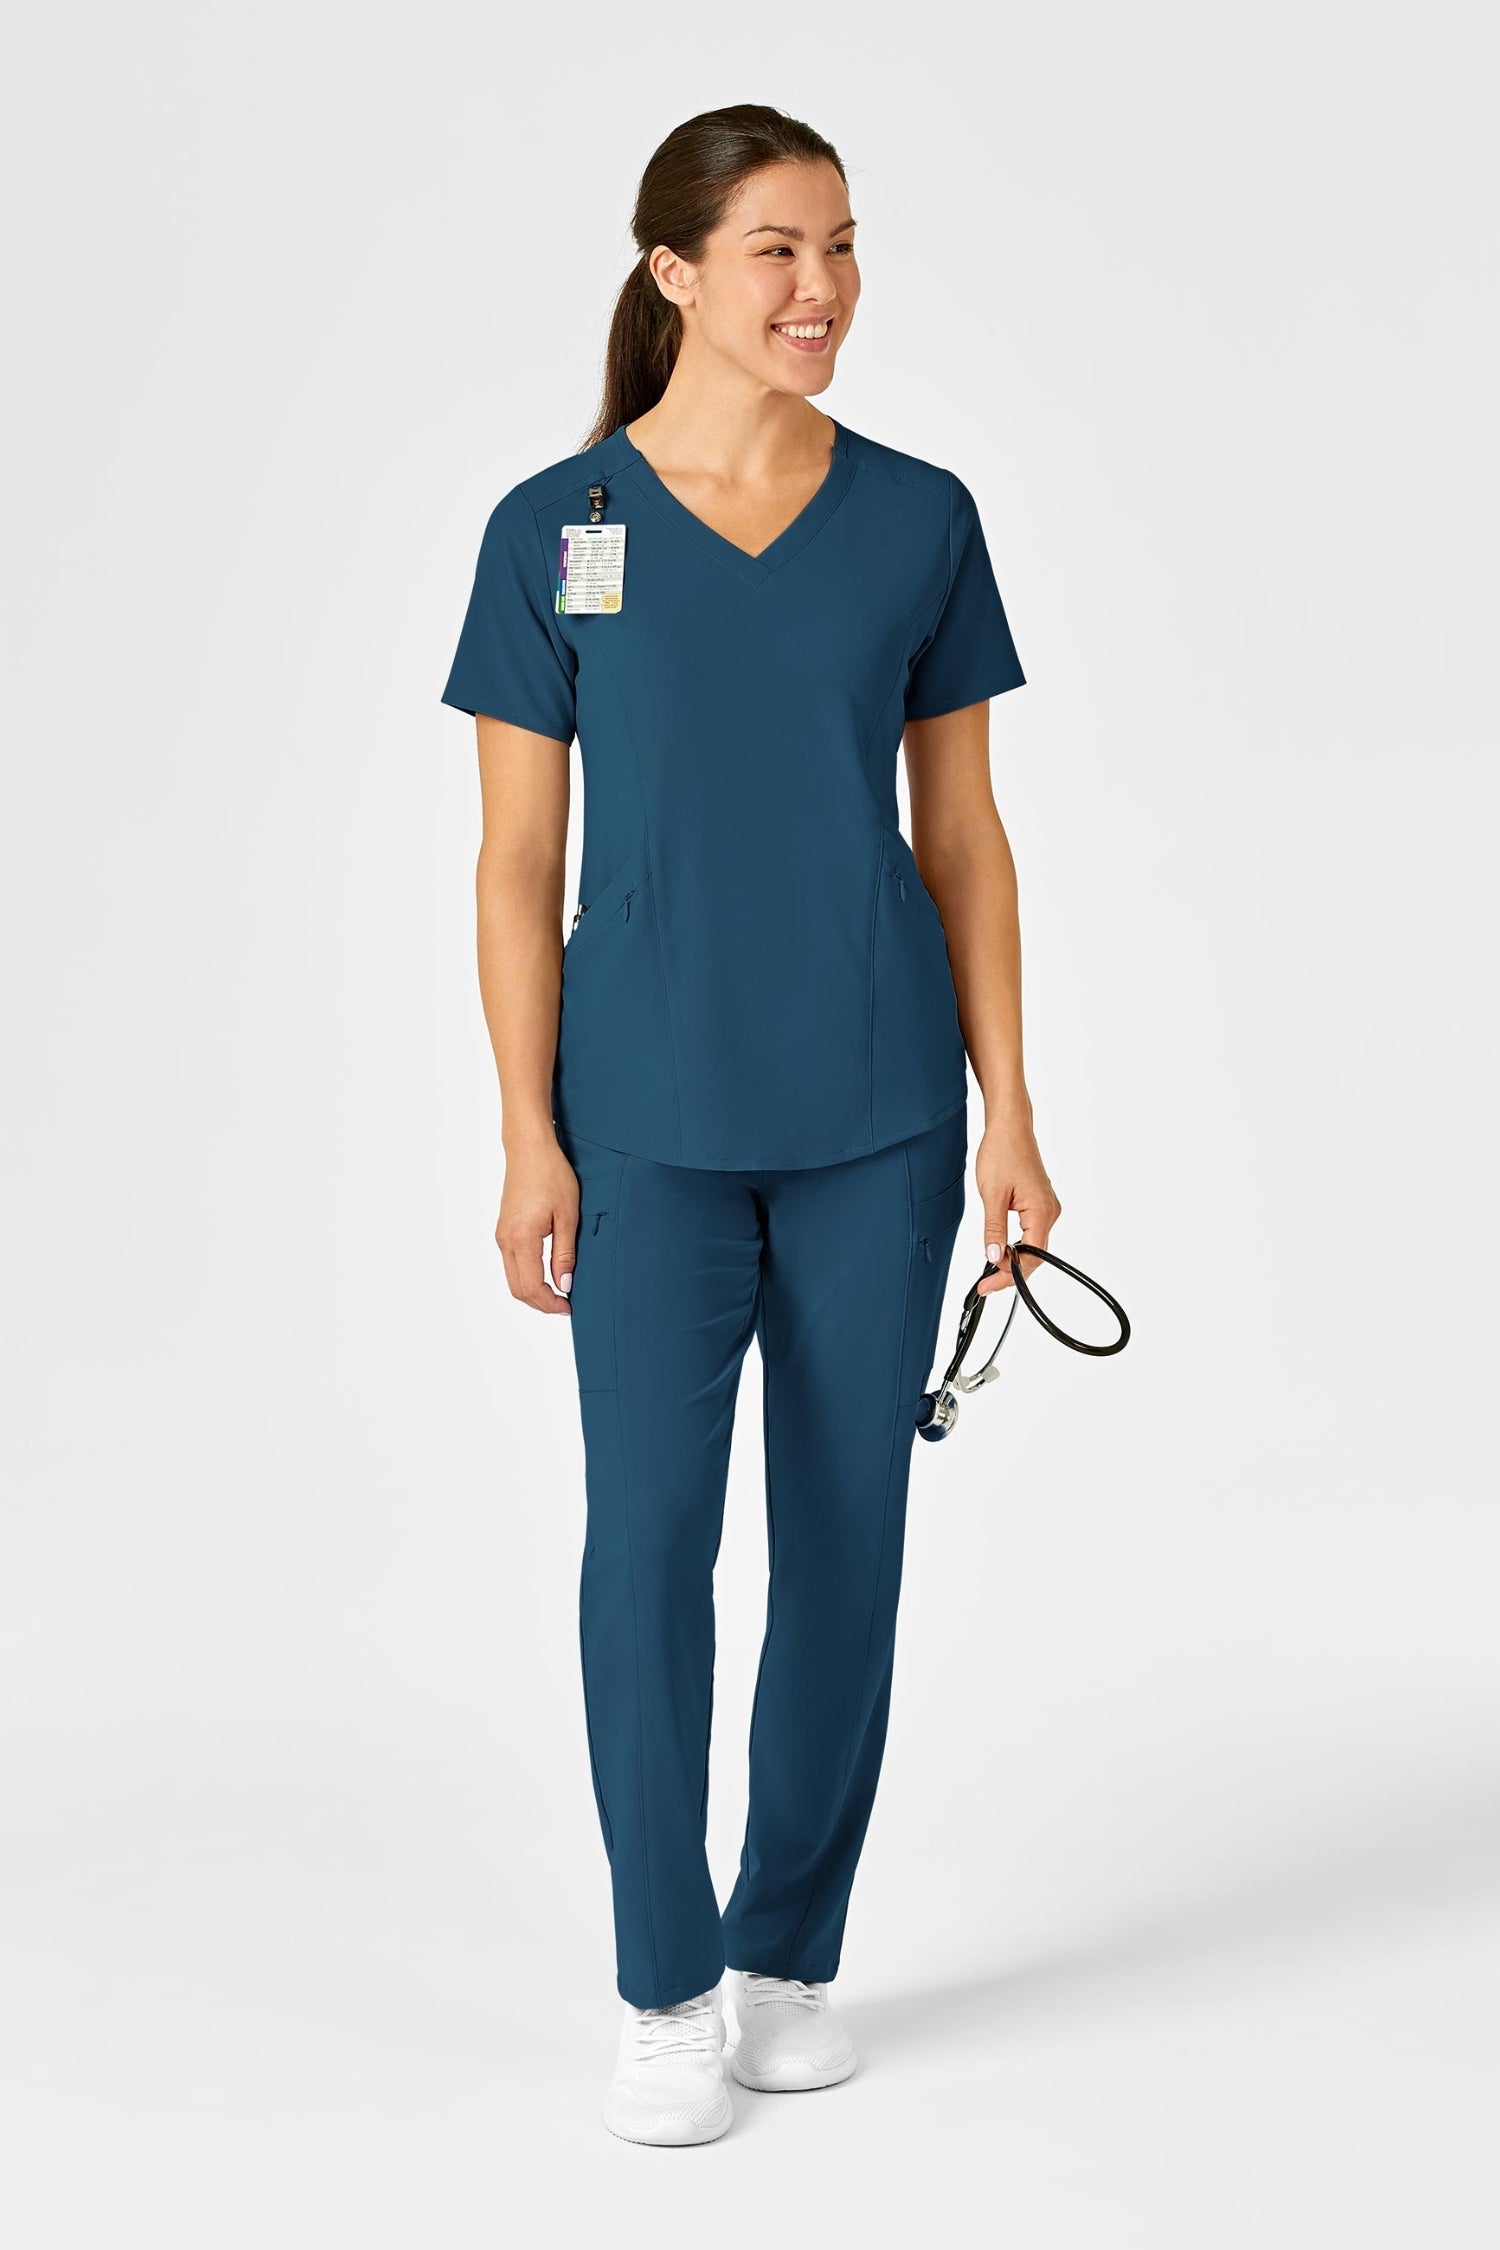 Femme en tenue médicale polyester spandex avec chien, poches à fermeture, bleu turquoise